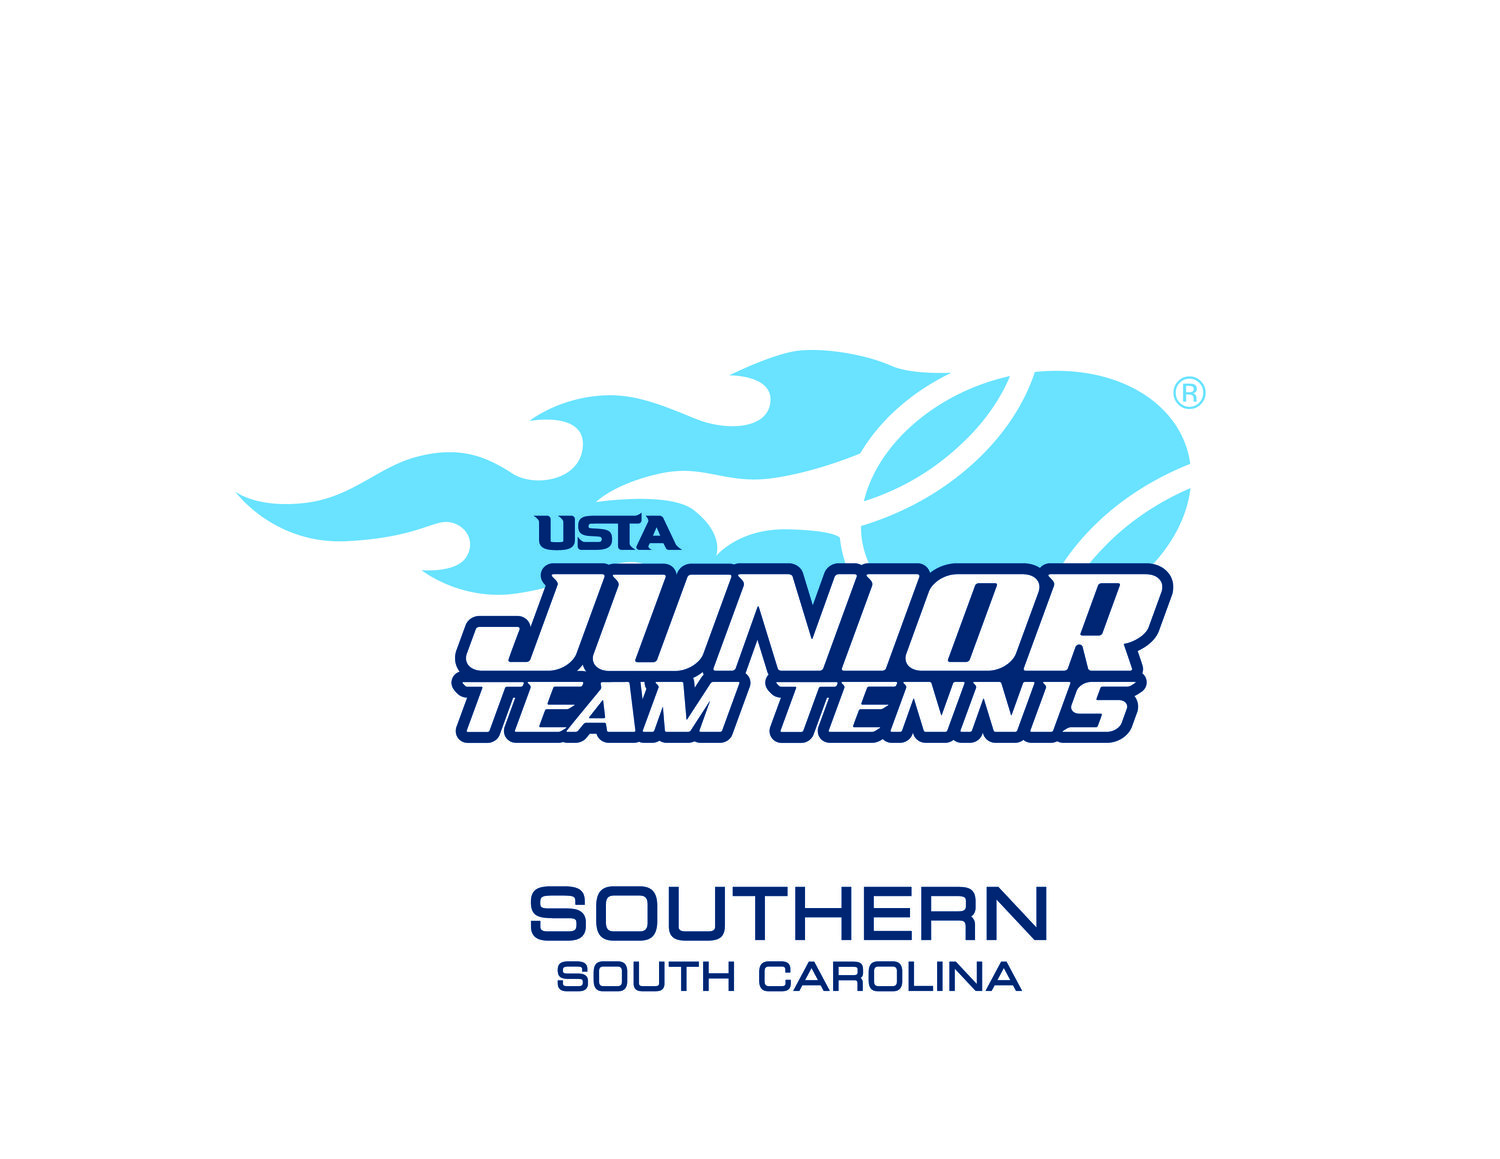 USTA Junior Team Tennis of Spartanburg